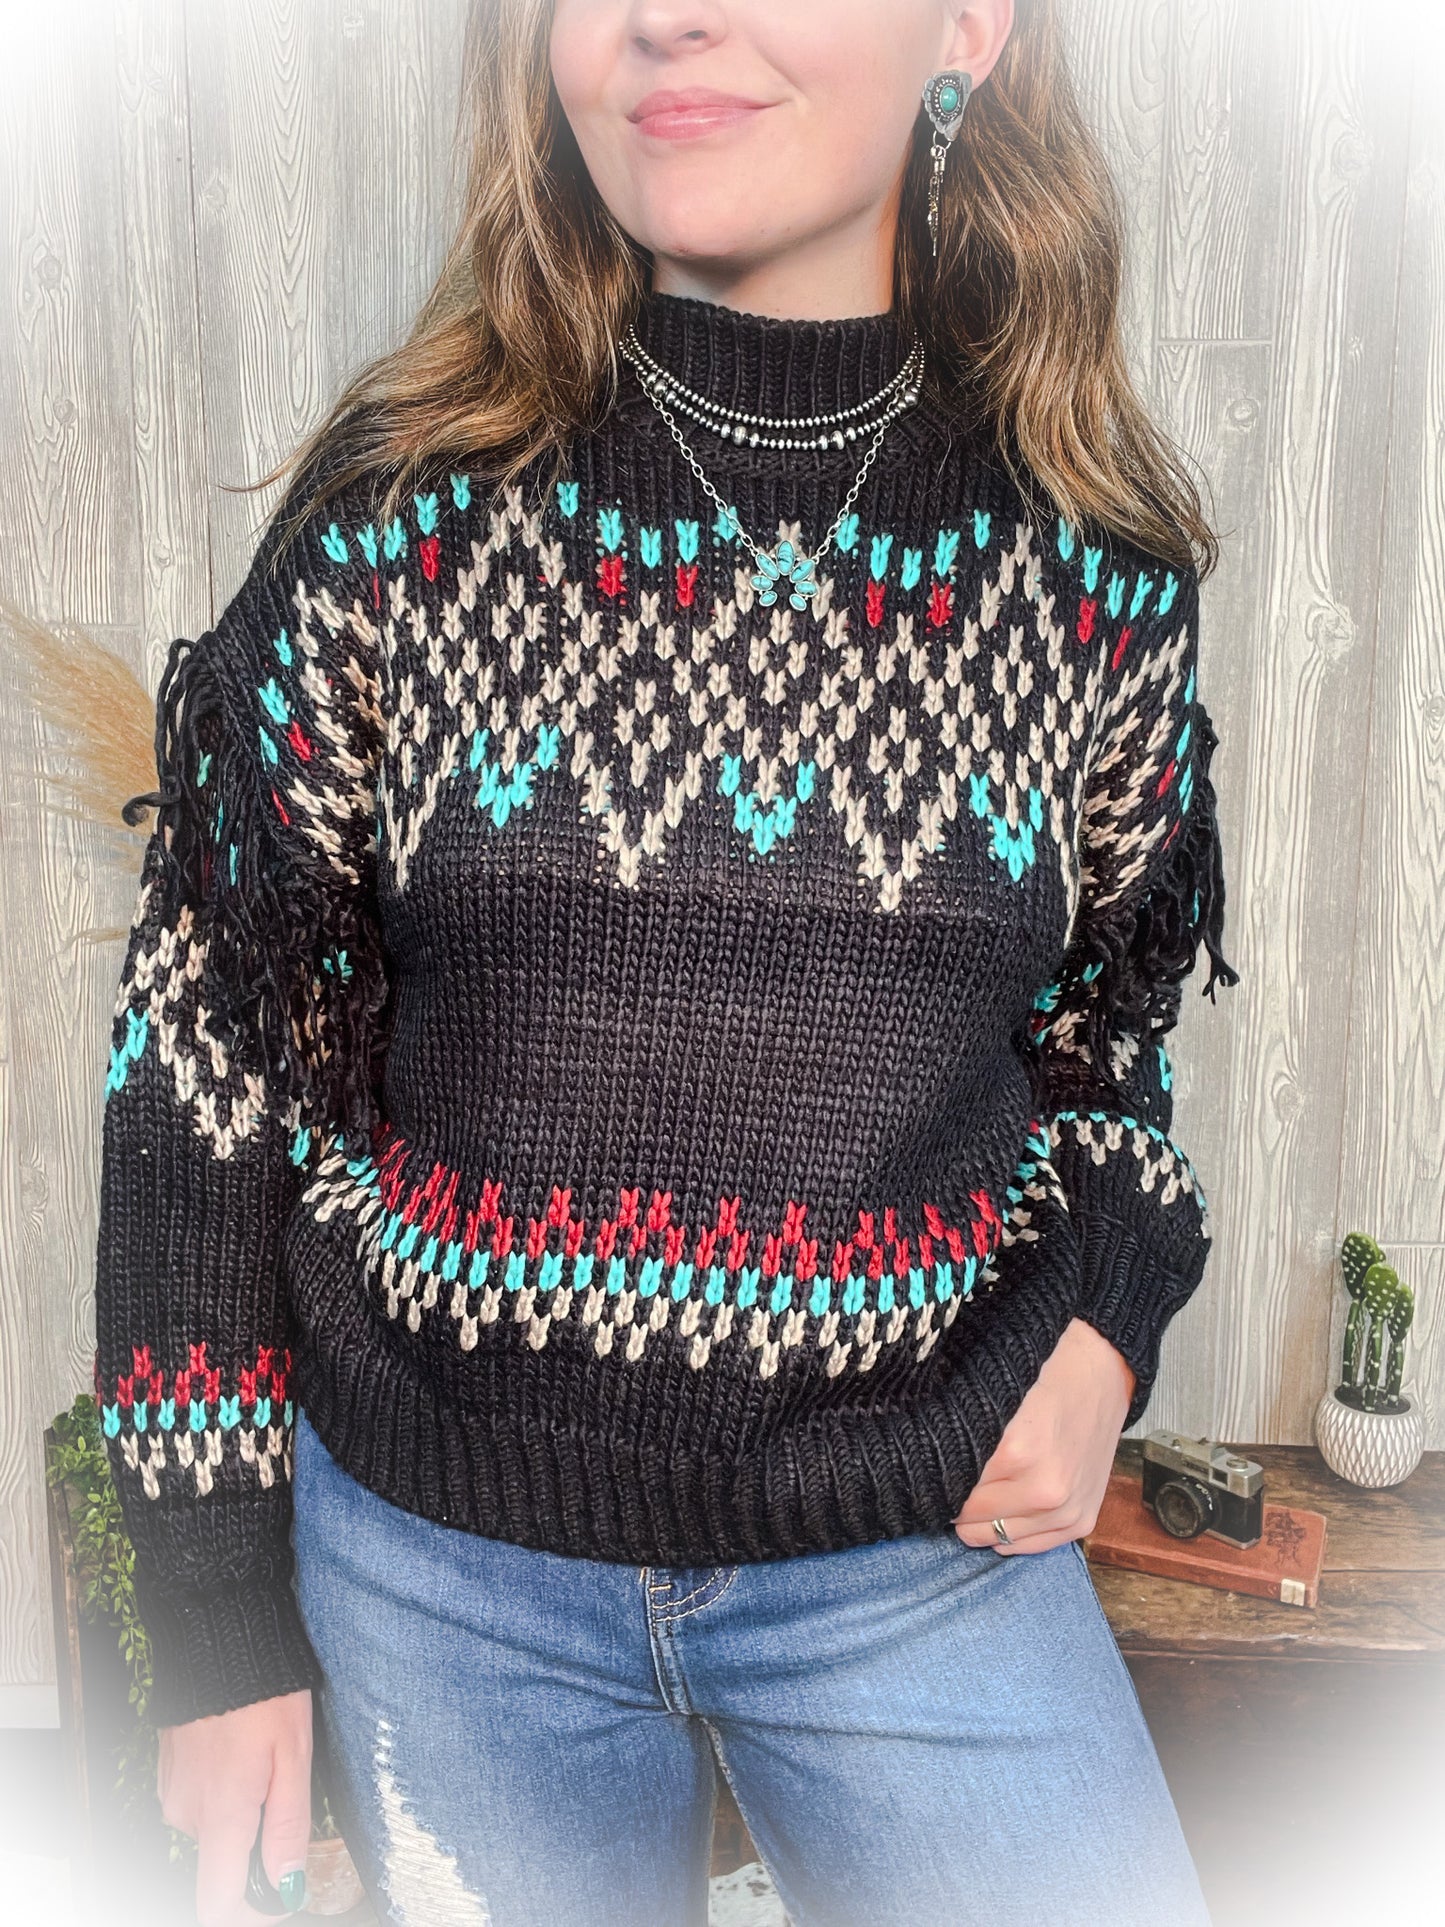 Western Mock Turtleneck Sweater